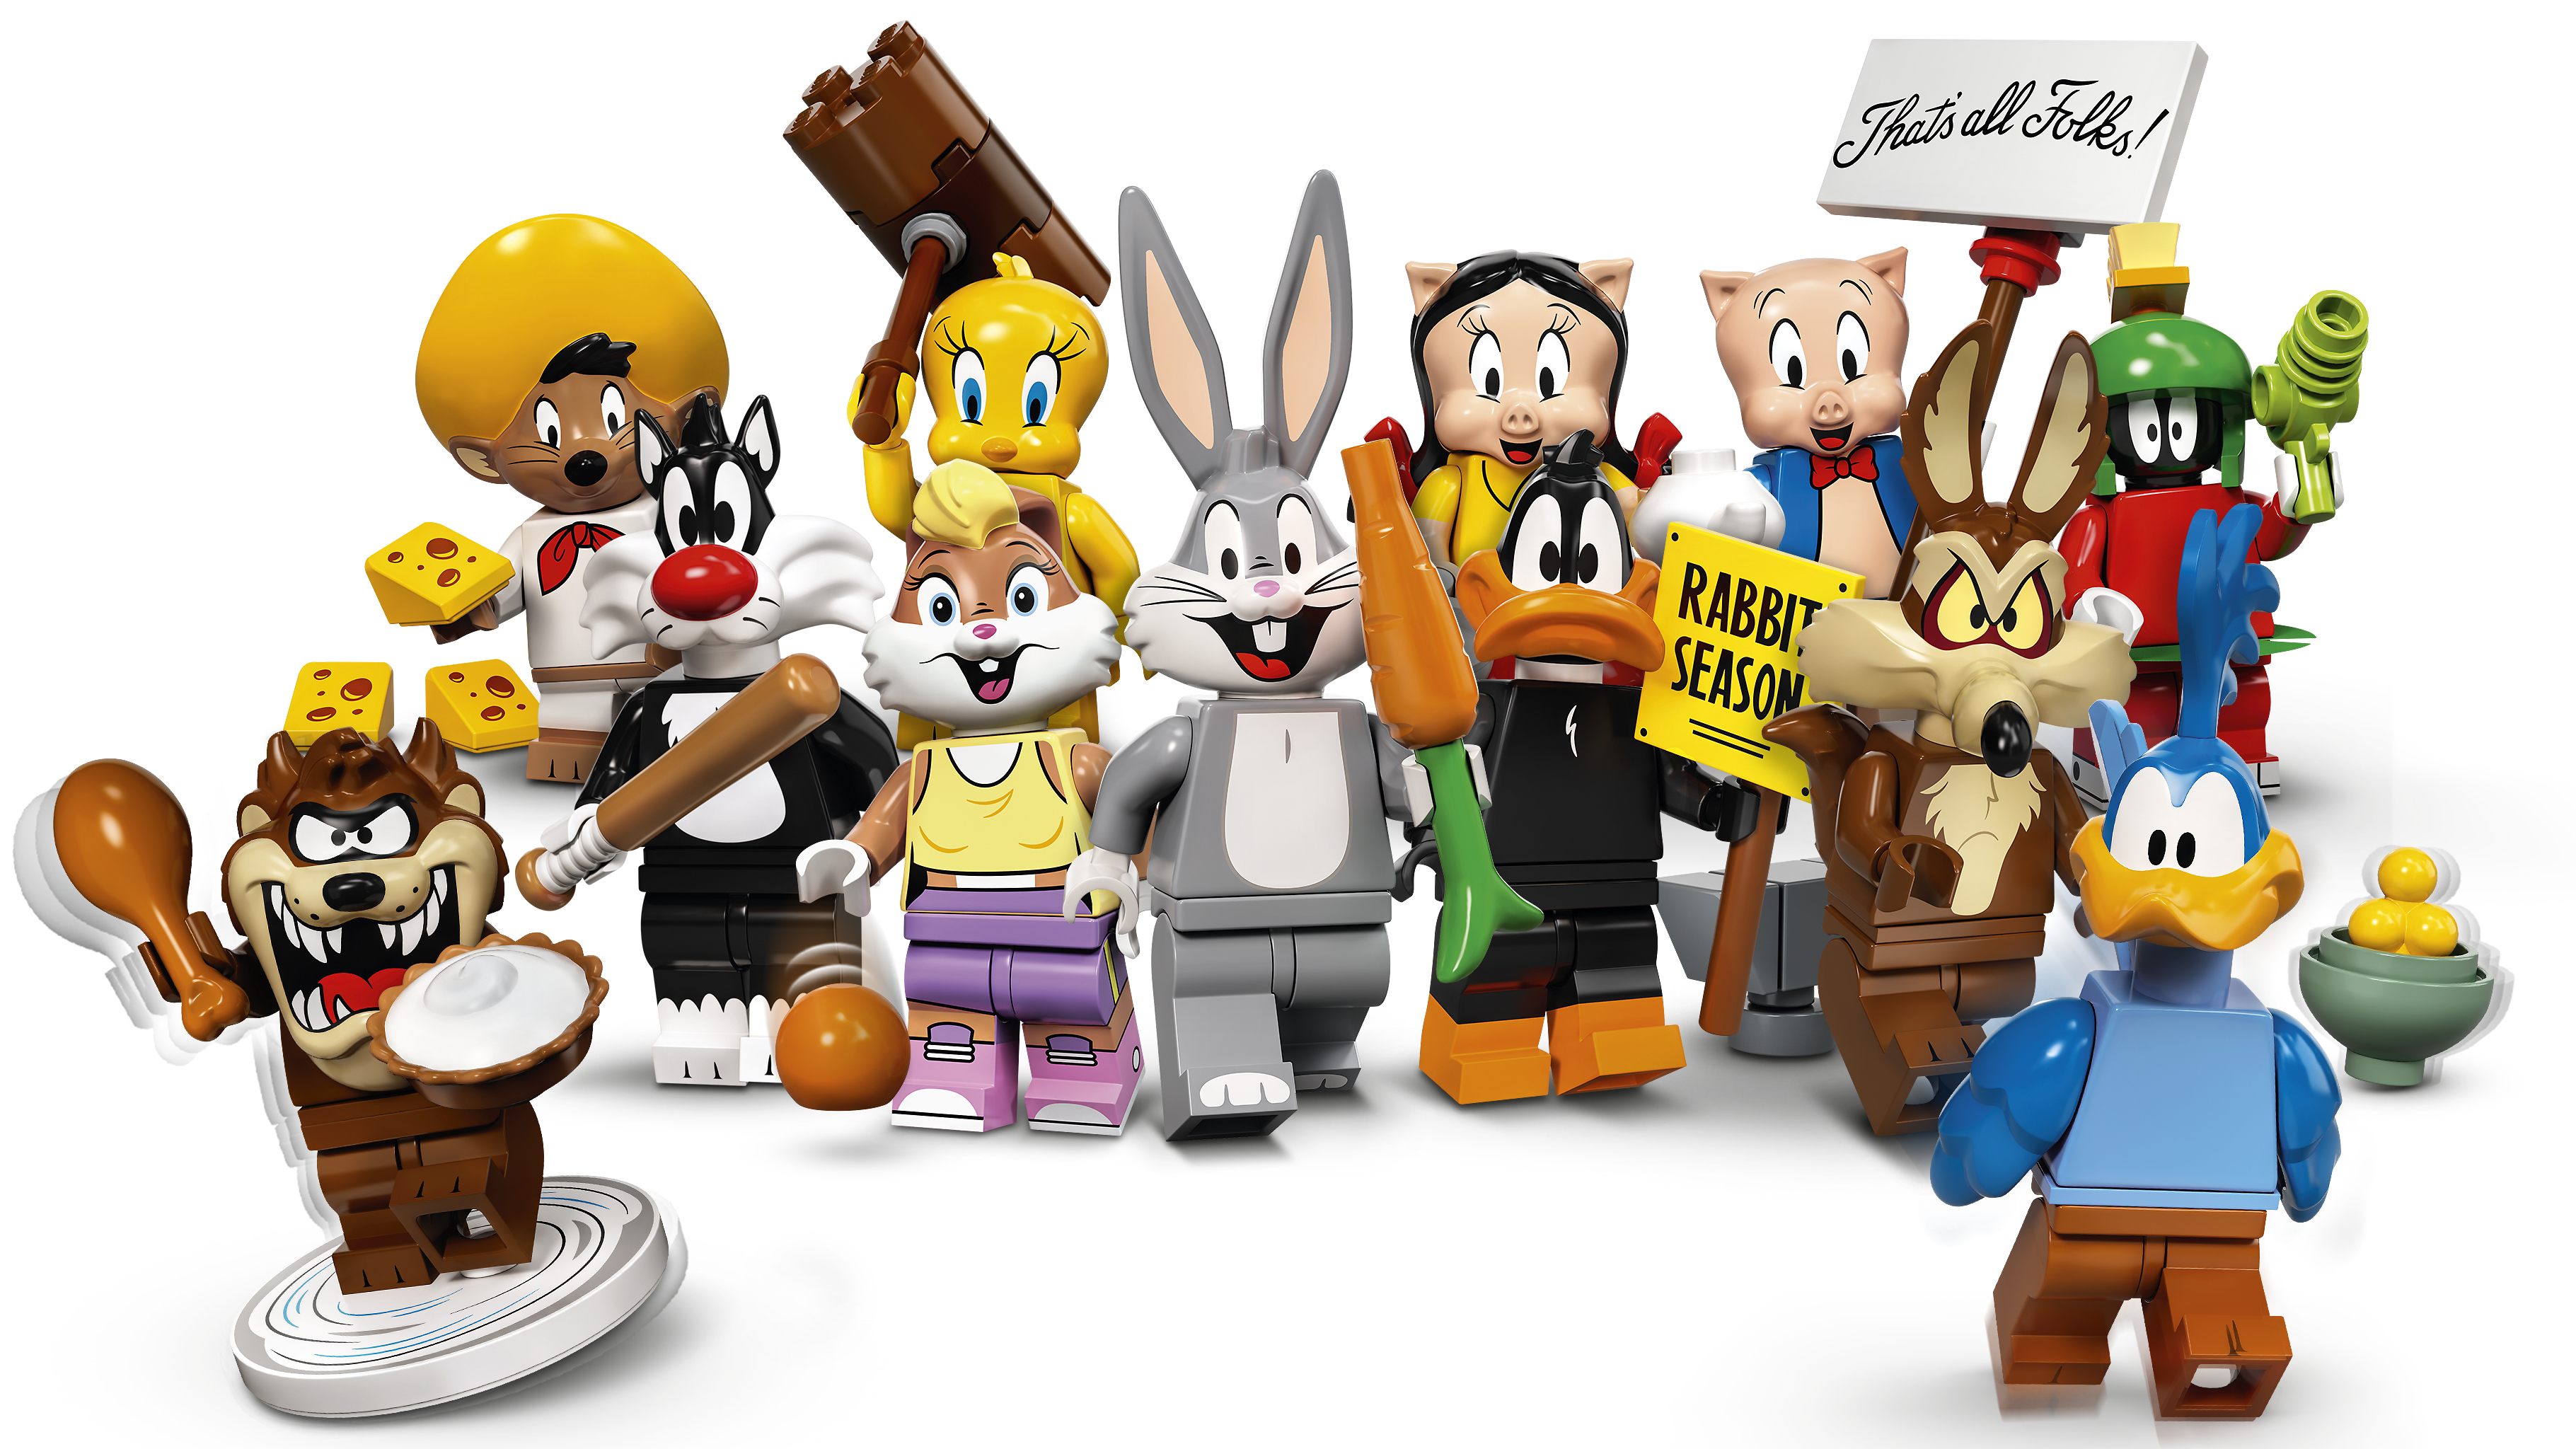 environ 180416.20 cm LEGO Minifigures Looney Tunes 71030 in Stock Maintenant choisissez votre propre Achetez 3 Obtenez 1 Gratuit 